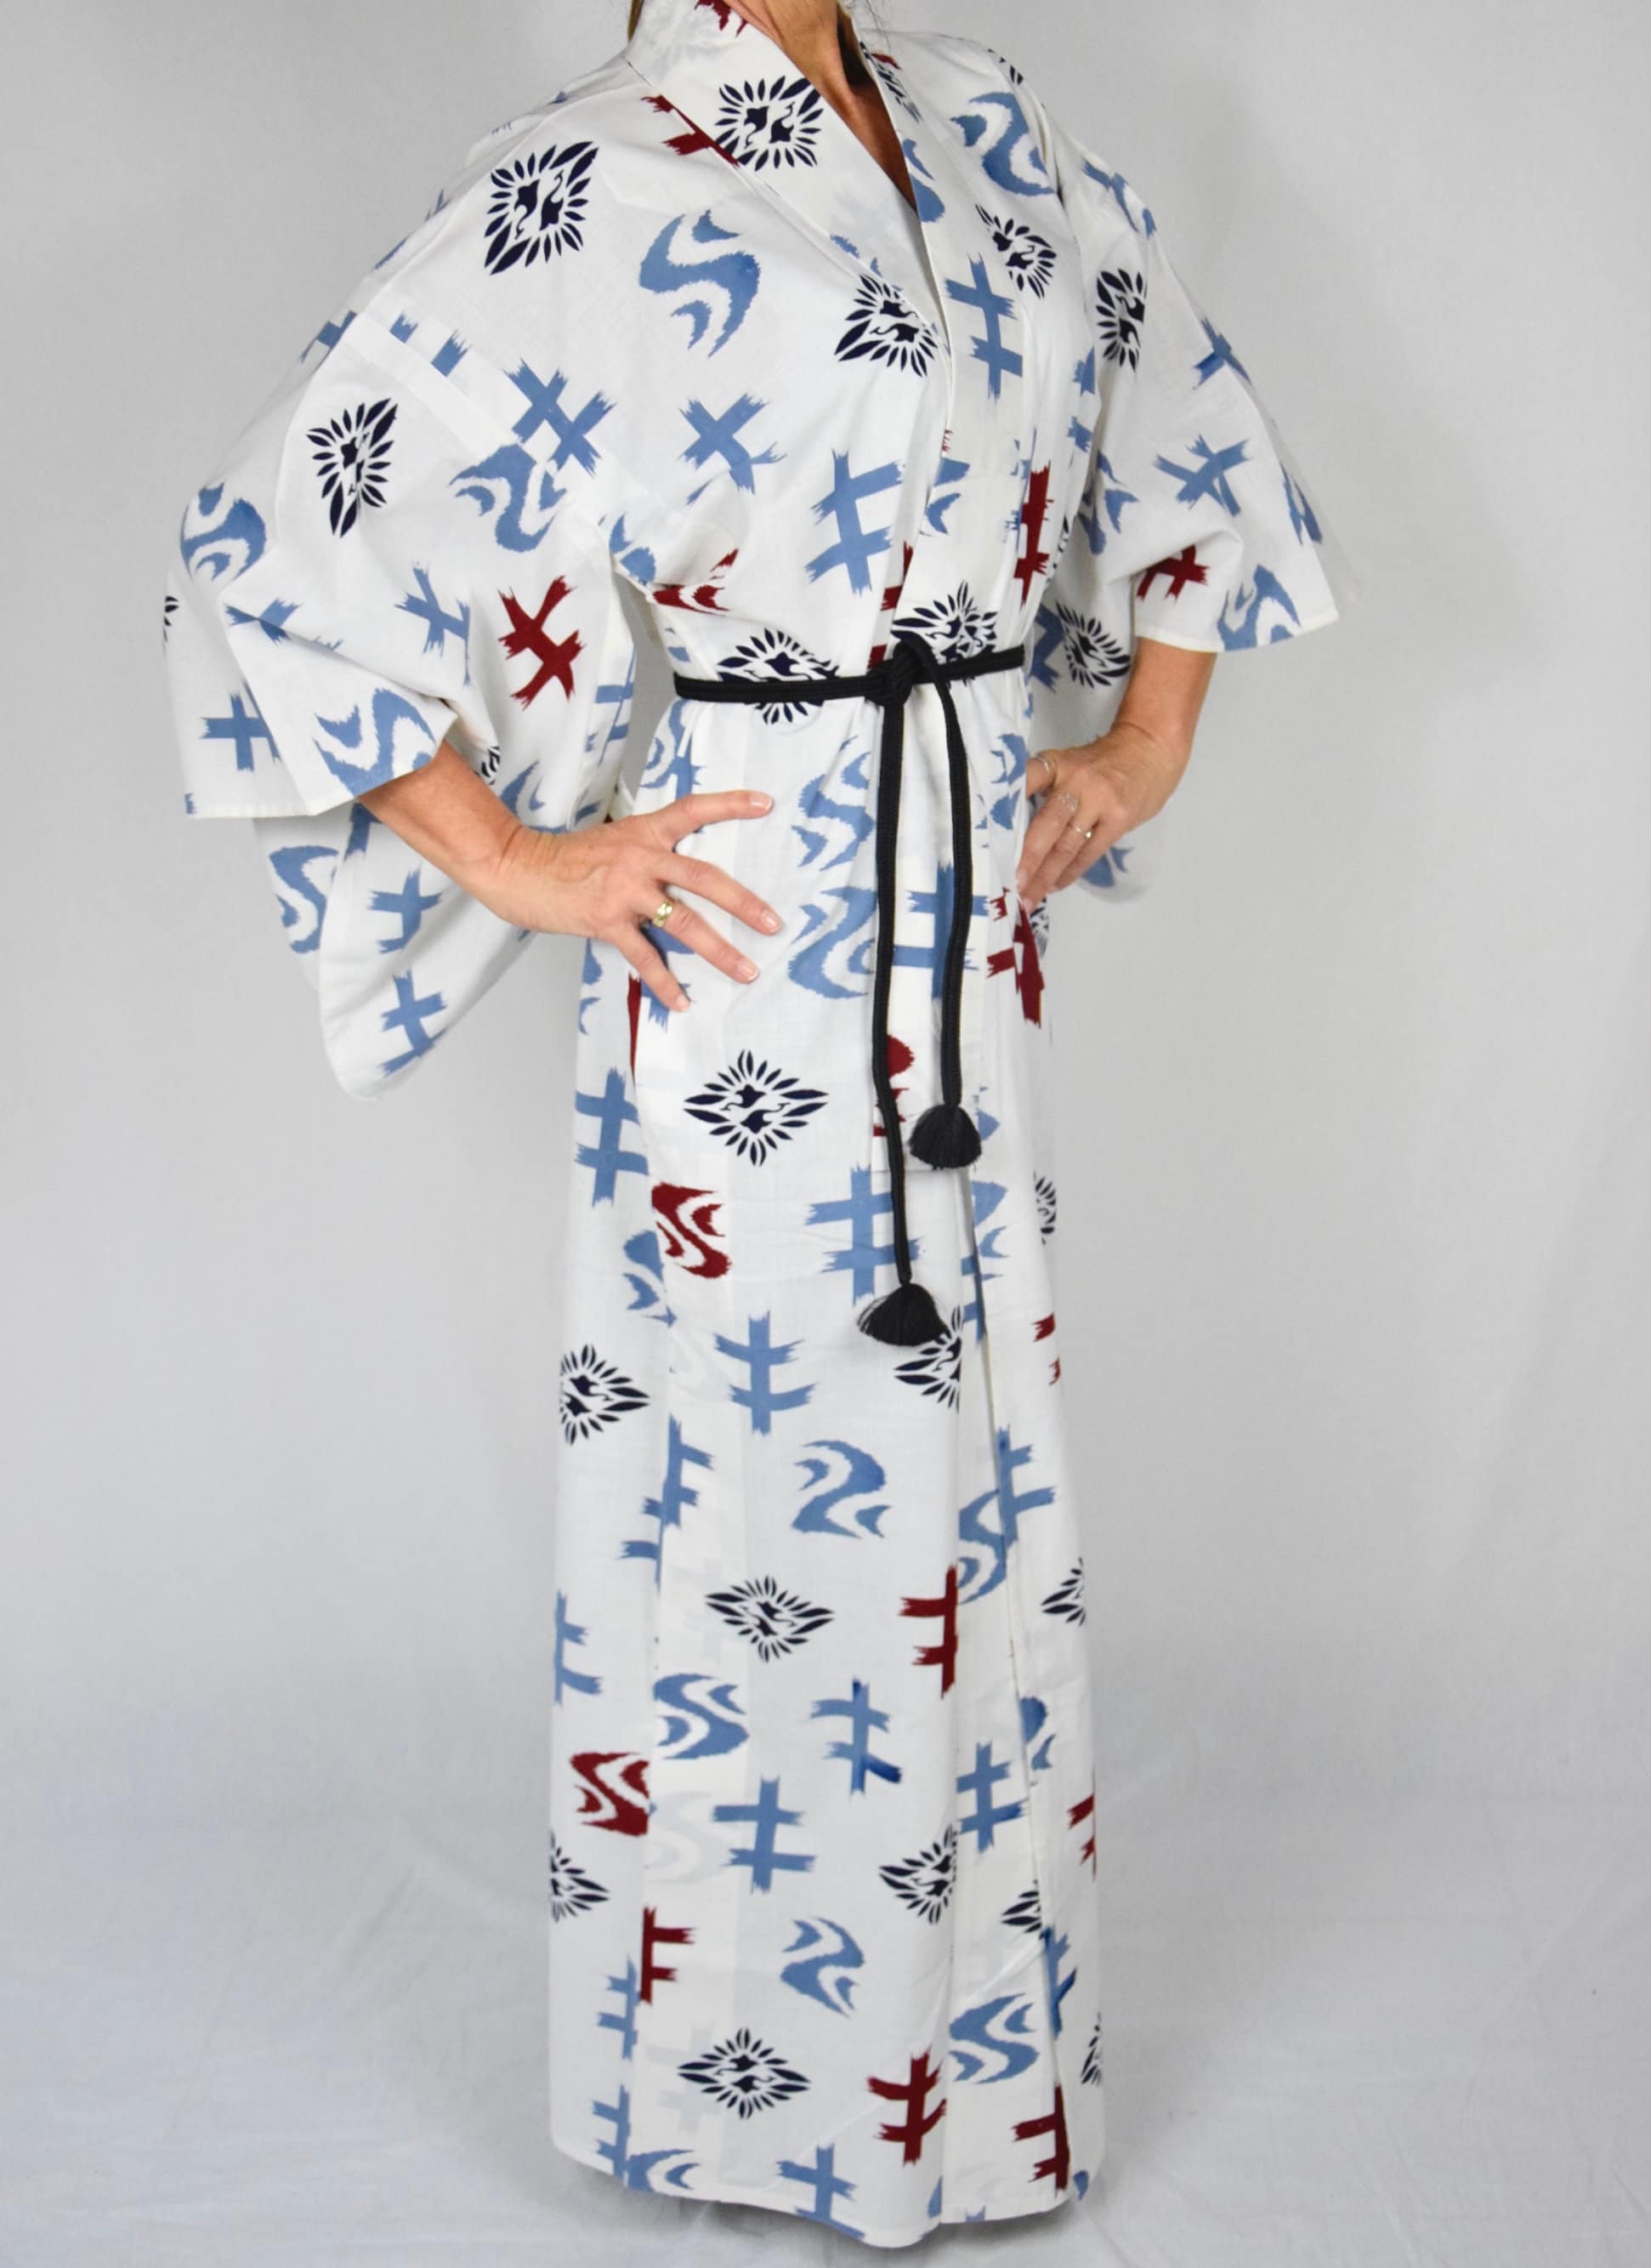 Cotton Kimono Robe / Yukata / Long Kimono Dressing Gown, Japanese Clothing,  100% Cotton Nightgown - Etsy